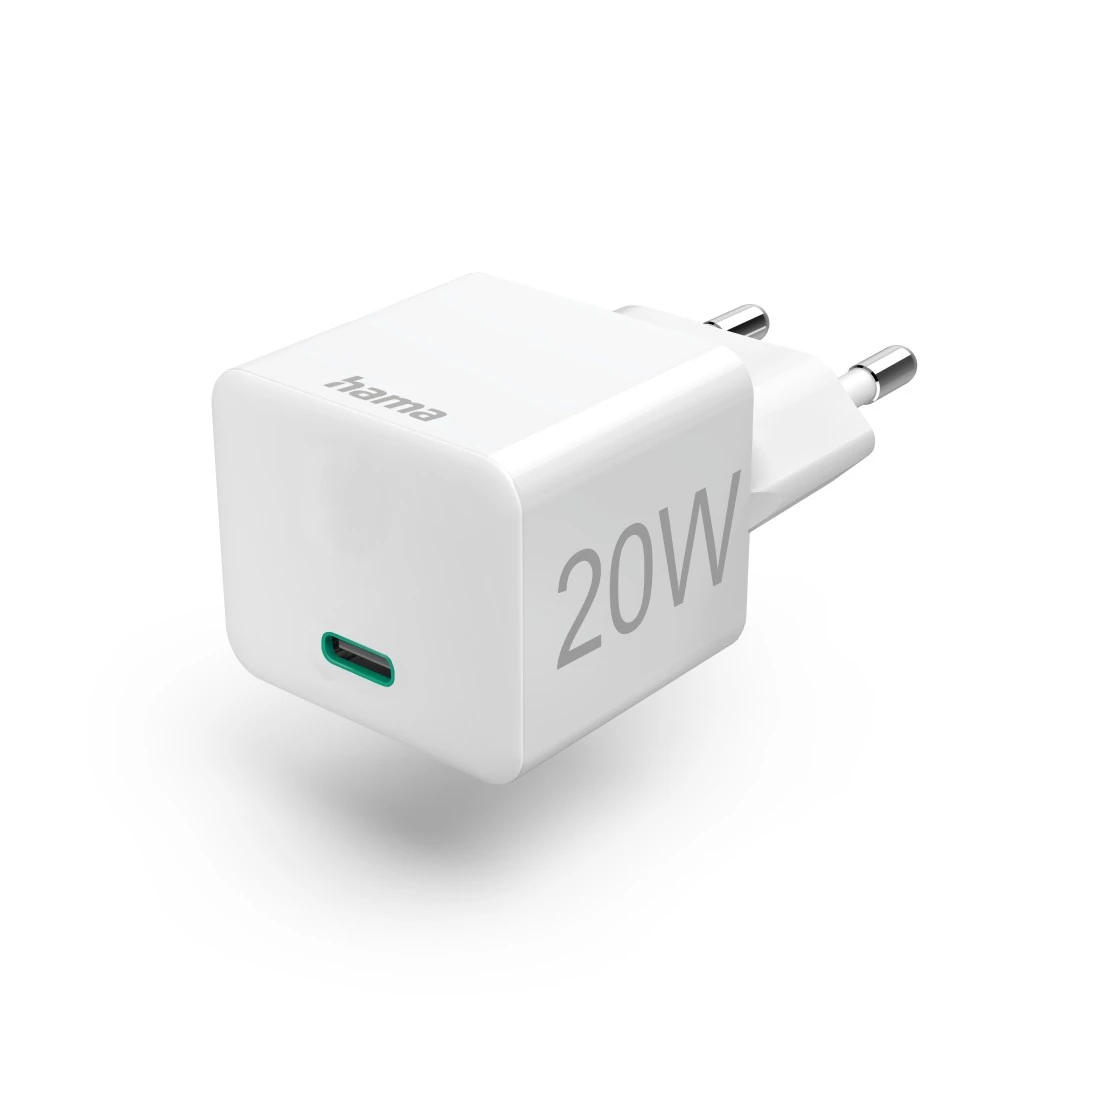 Consomac : Apple détaille le fonctionnement de son chargeur USB-C